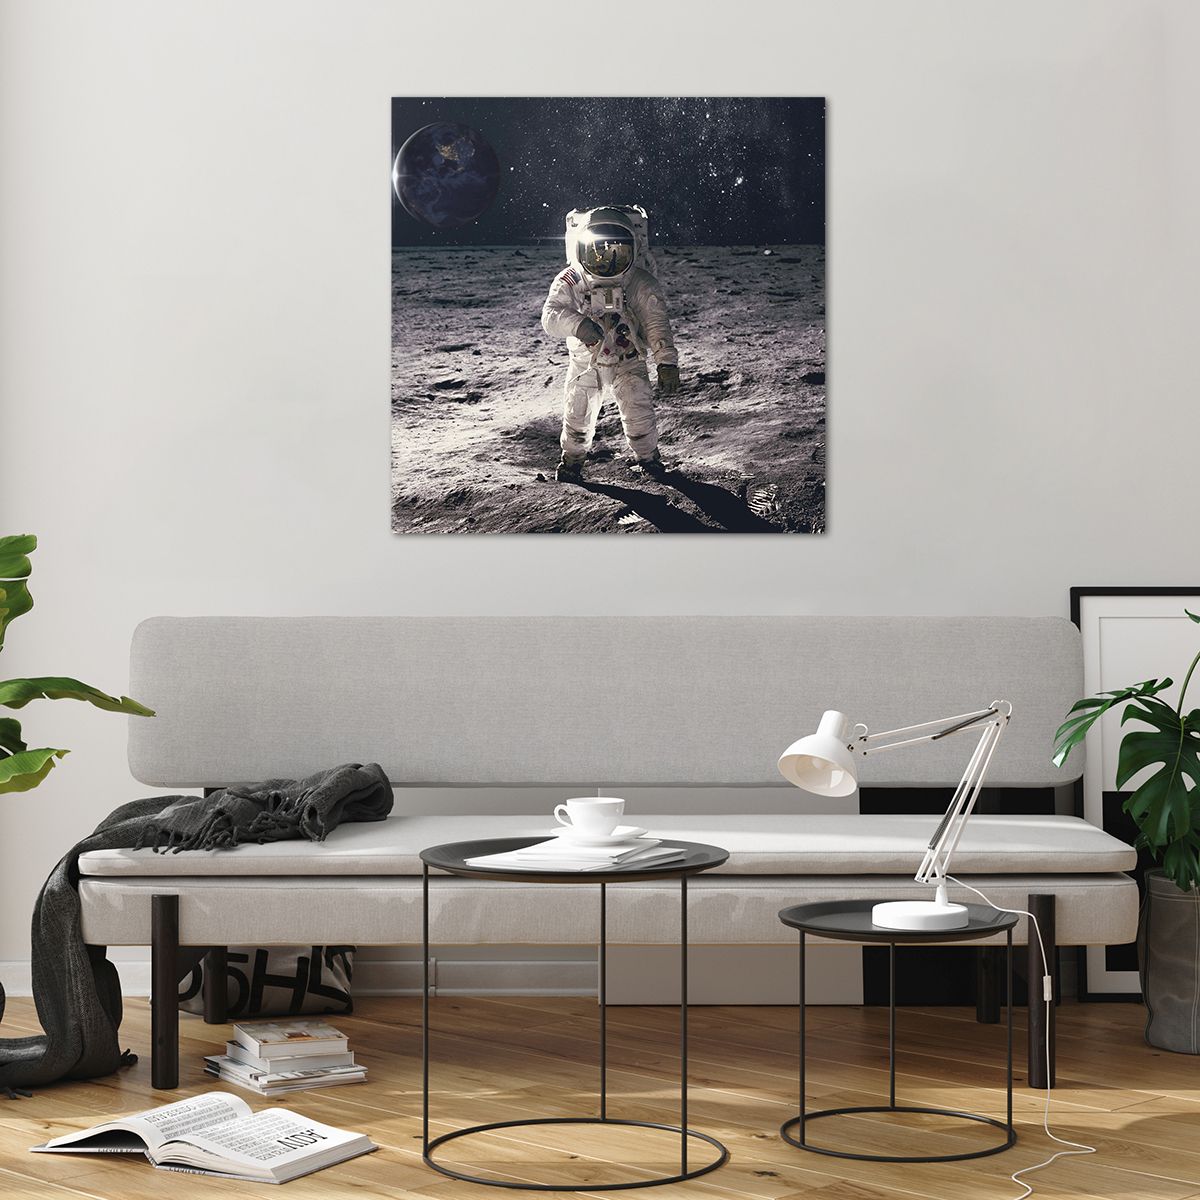 Obrazy na szkle Abstrakcja, Obrazy na szkle Człowiek Na Księżycu, Obrazy na szkle Astronauta, Obrazy na szkle Kosmos, Obrazy na szkle Księżyc